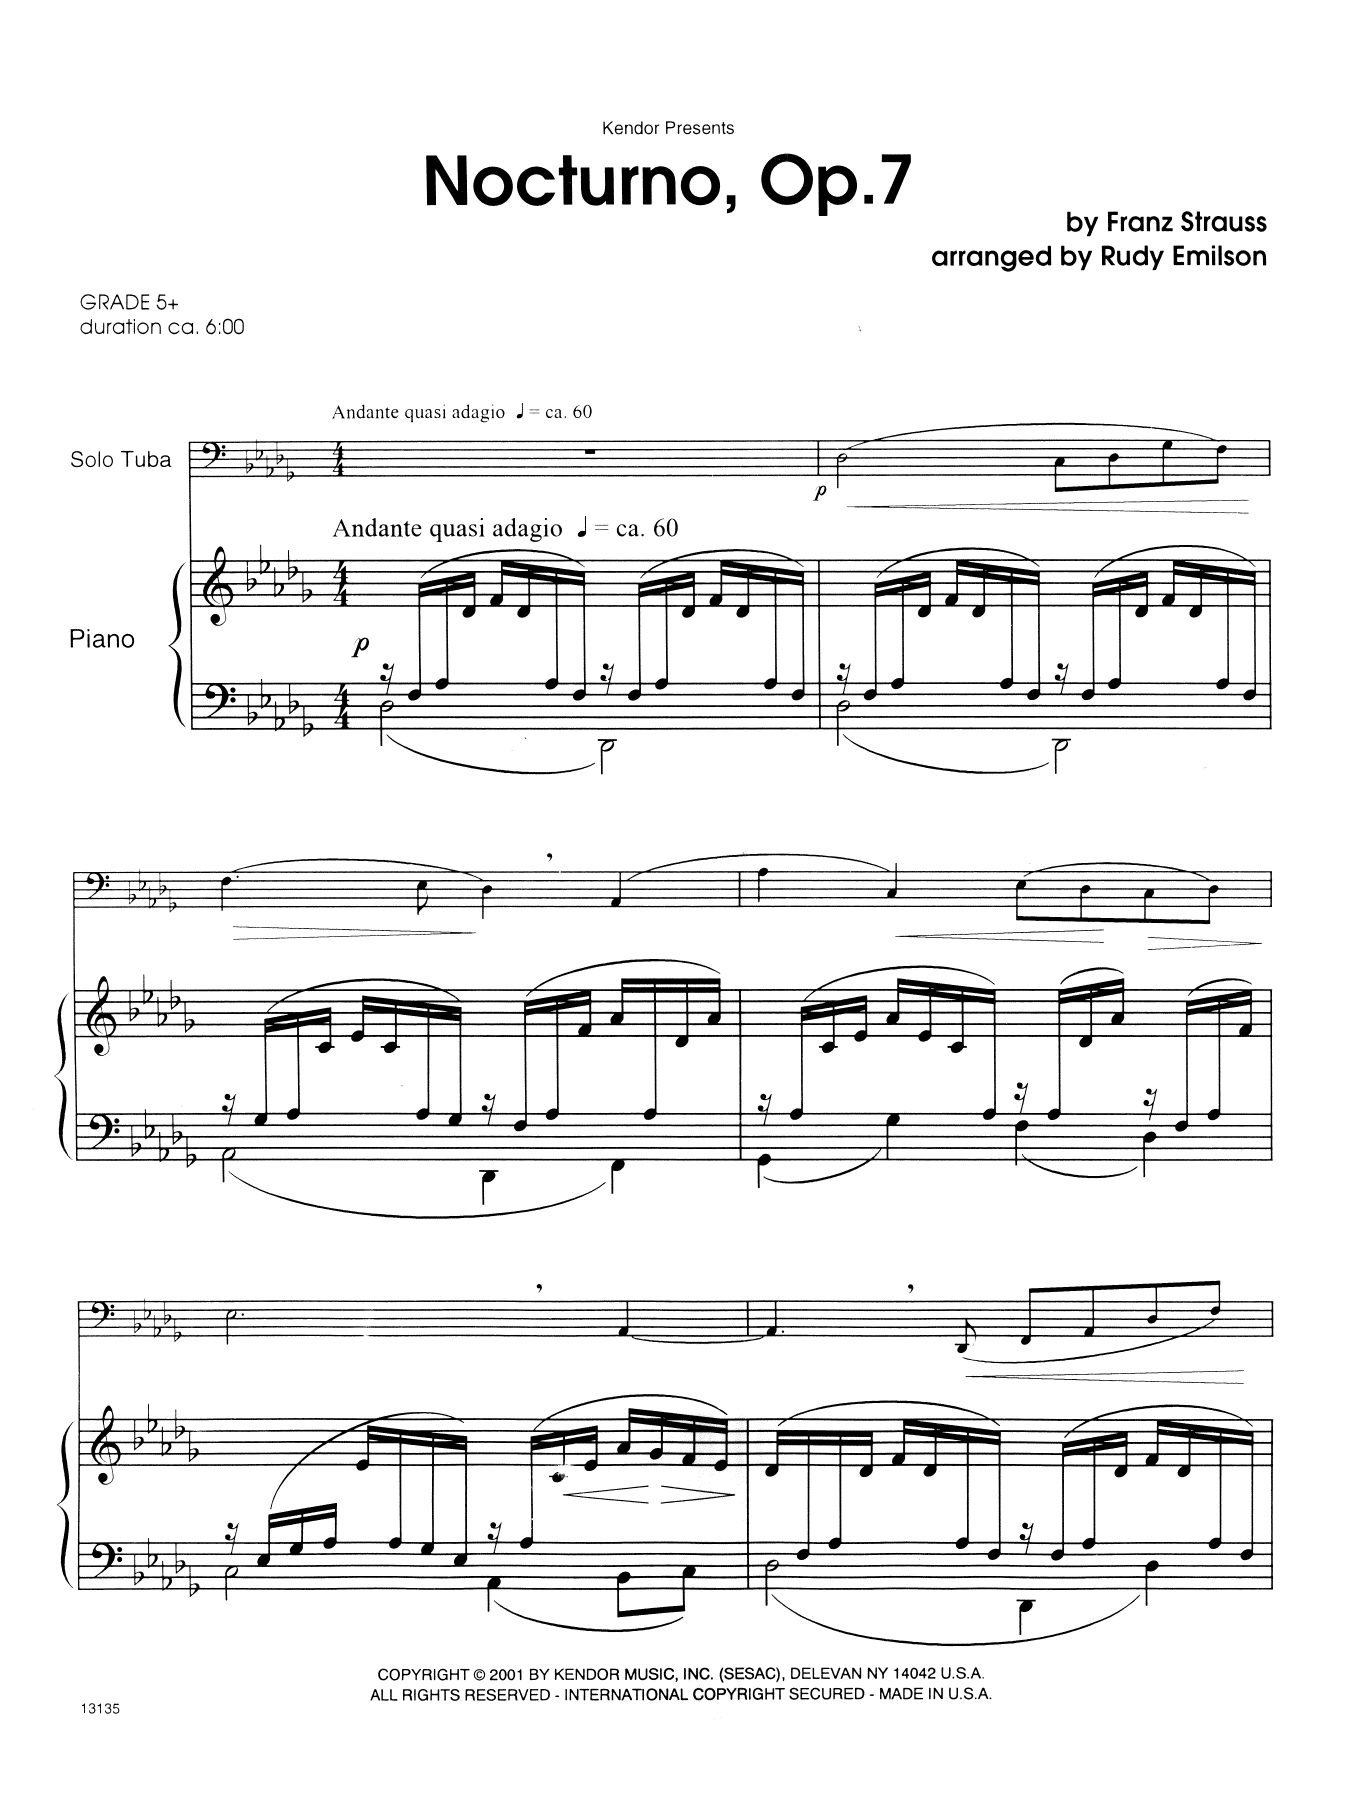 Nocturno, Op. 7 - Piano Accompaniment (Brass Solo) von Rudy Emilson